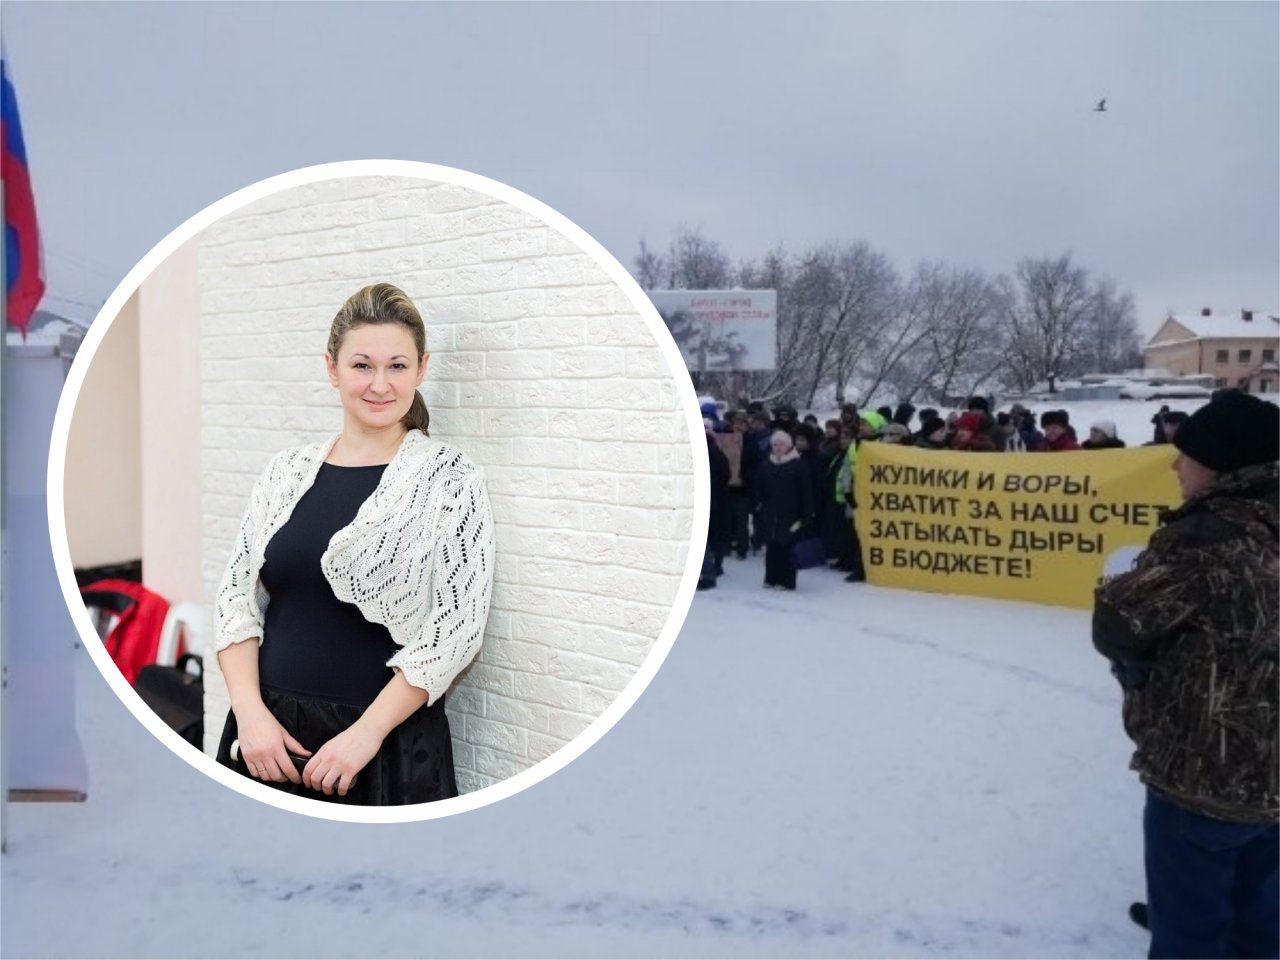 "Говорят, что я ненормальная и после пикетов ничего не изменится": многодетная мать об акциях протеста  в Кирове и их результатах